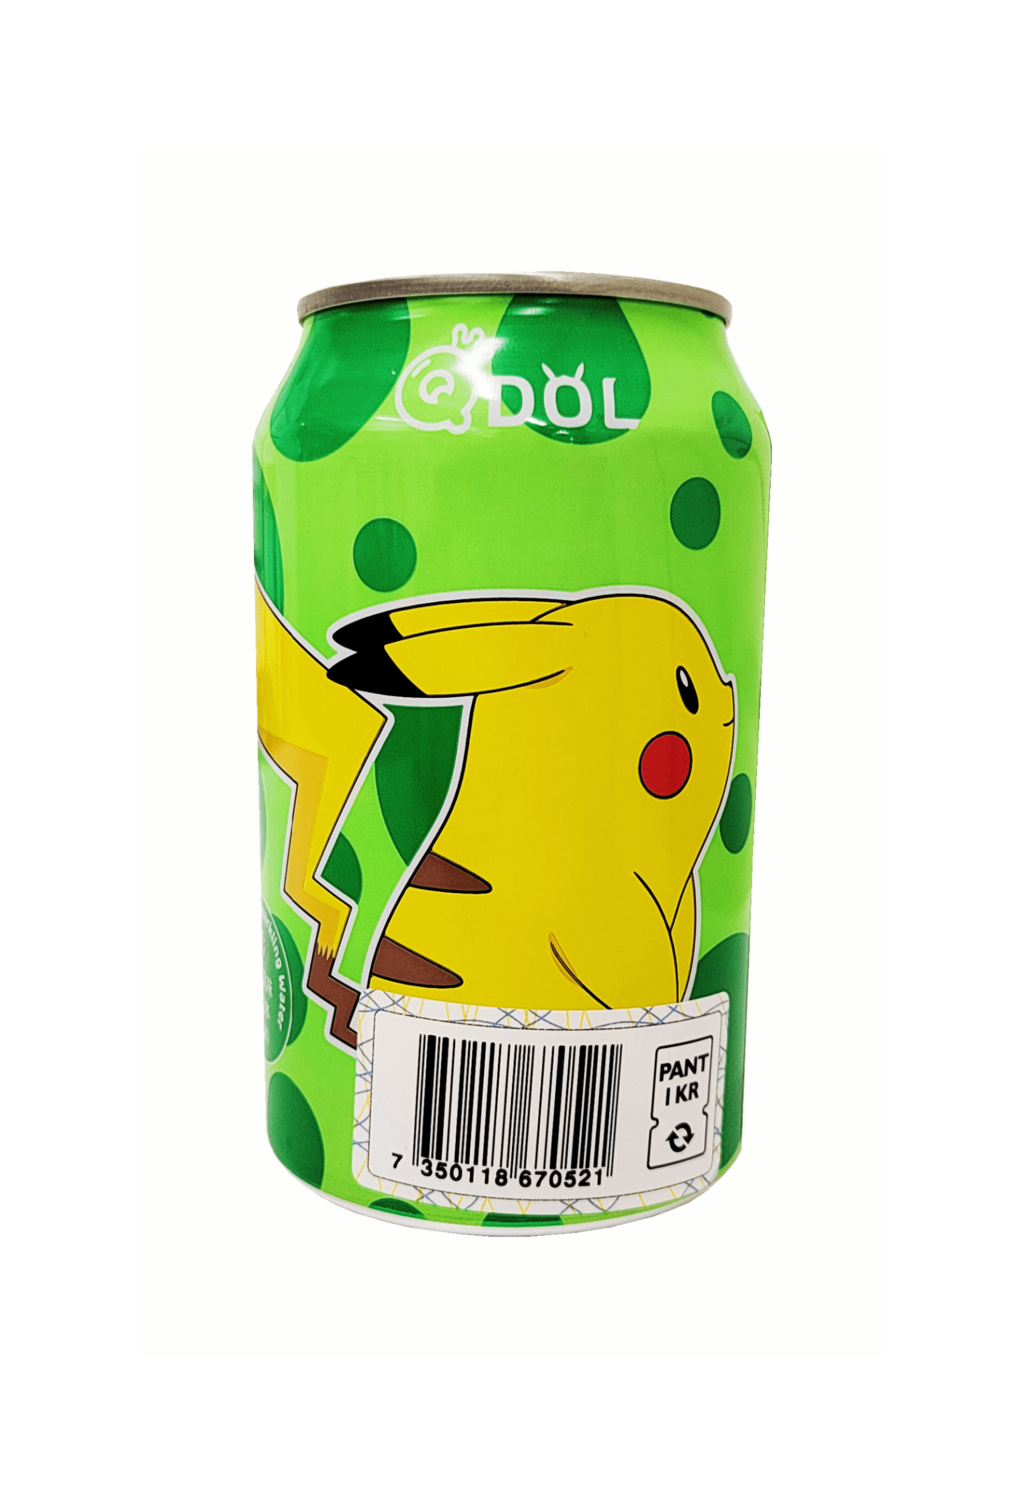 气泡水 沁心柠檬风味 330ml 宠物小精灵 QDOL Pokemon 中国